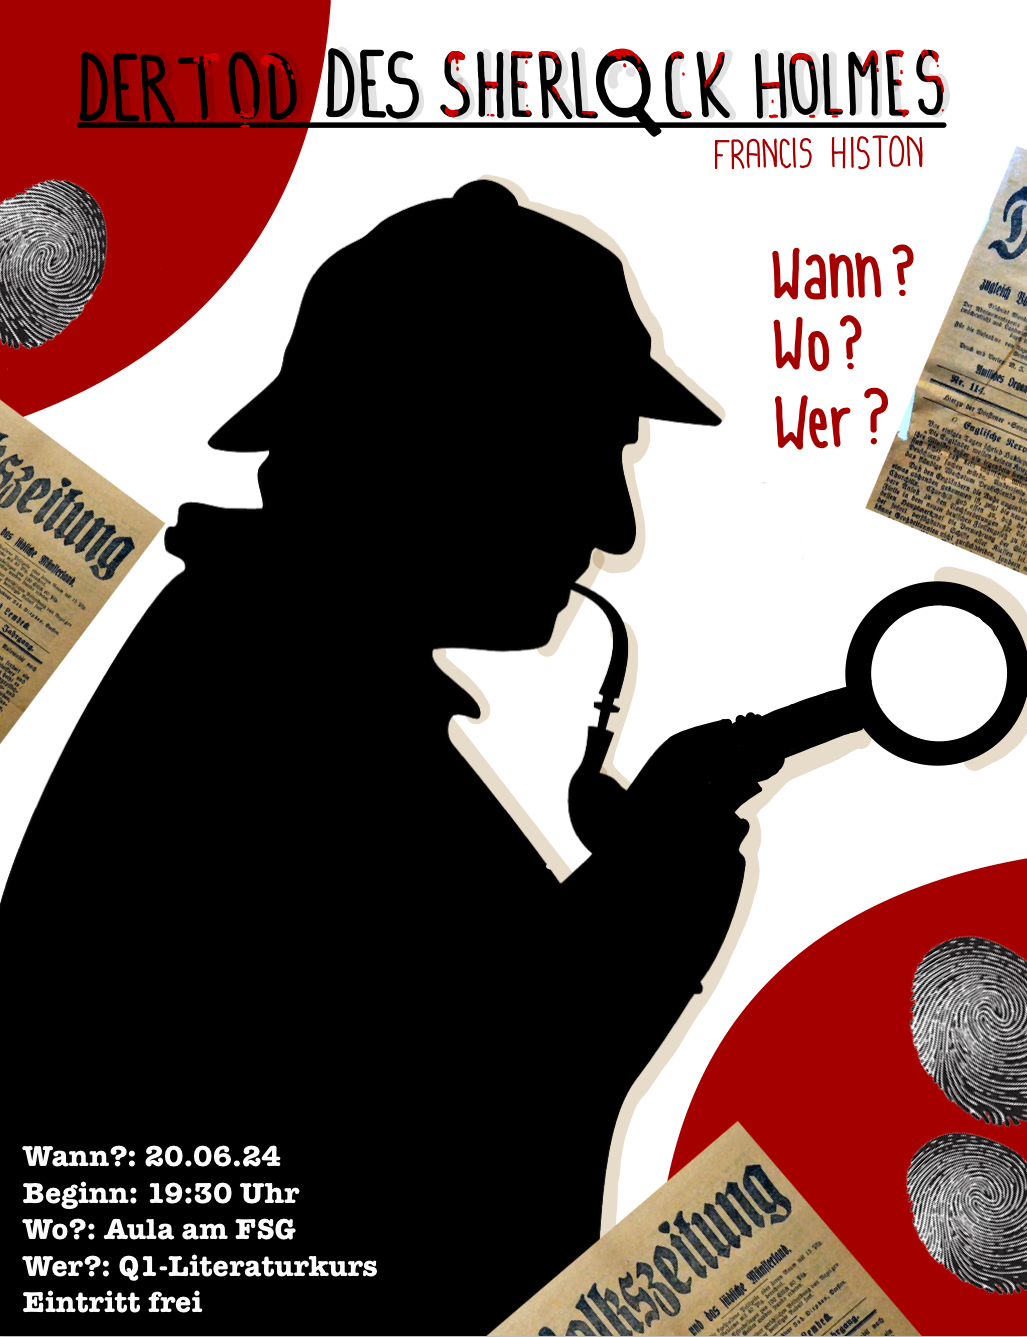 Literaturkurs Q1 Theater Der Tod des Sherlock Holmes.jpg